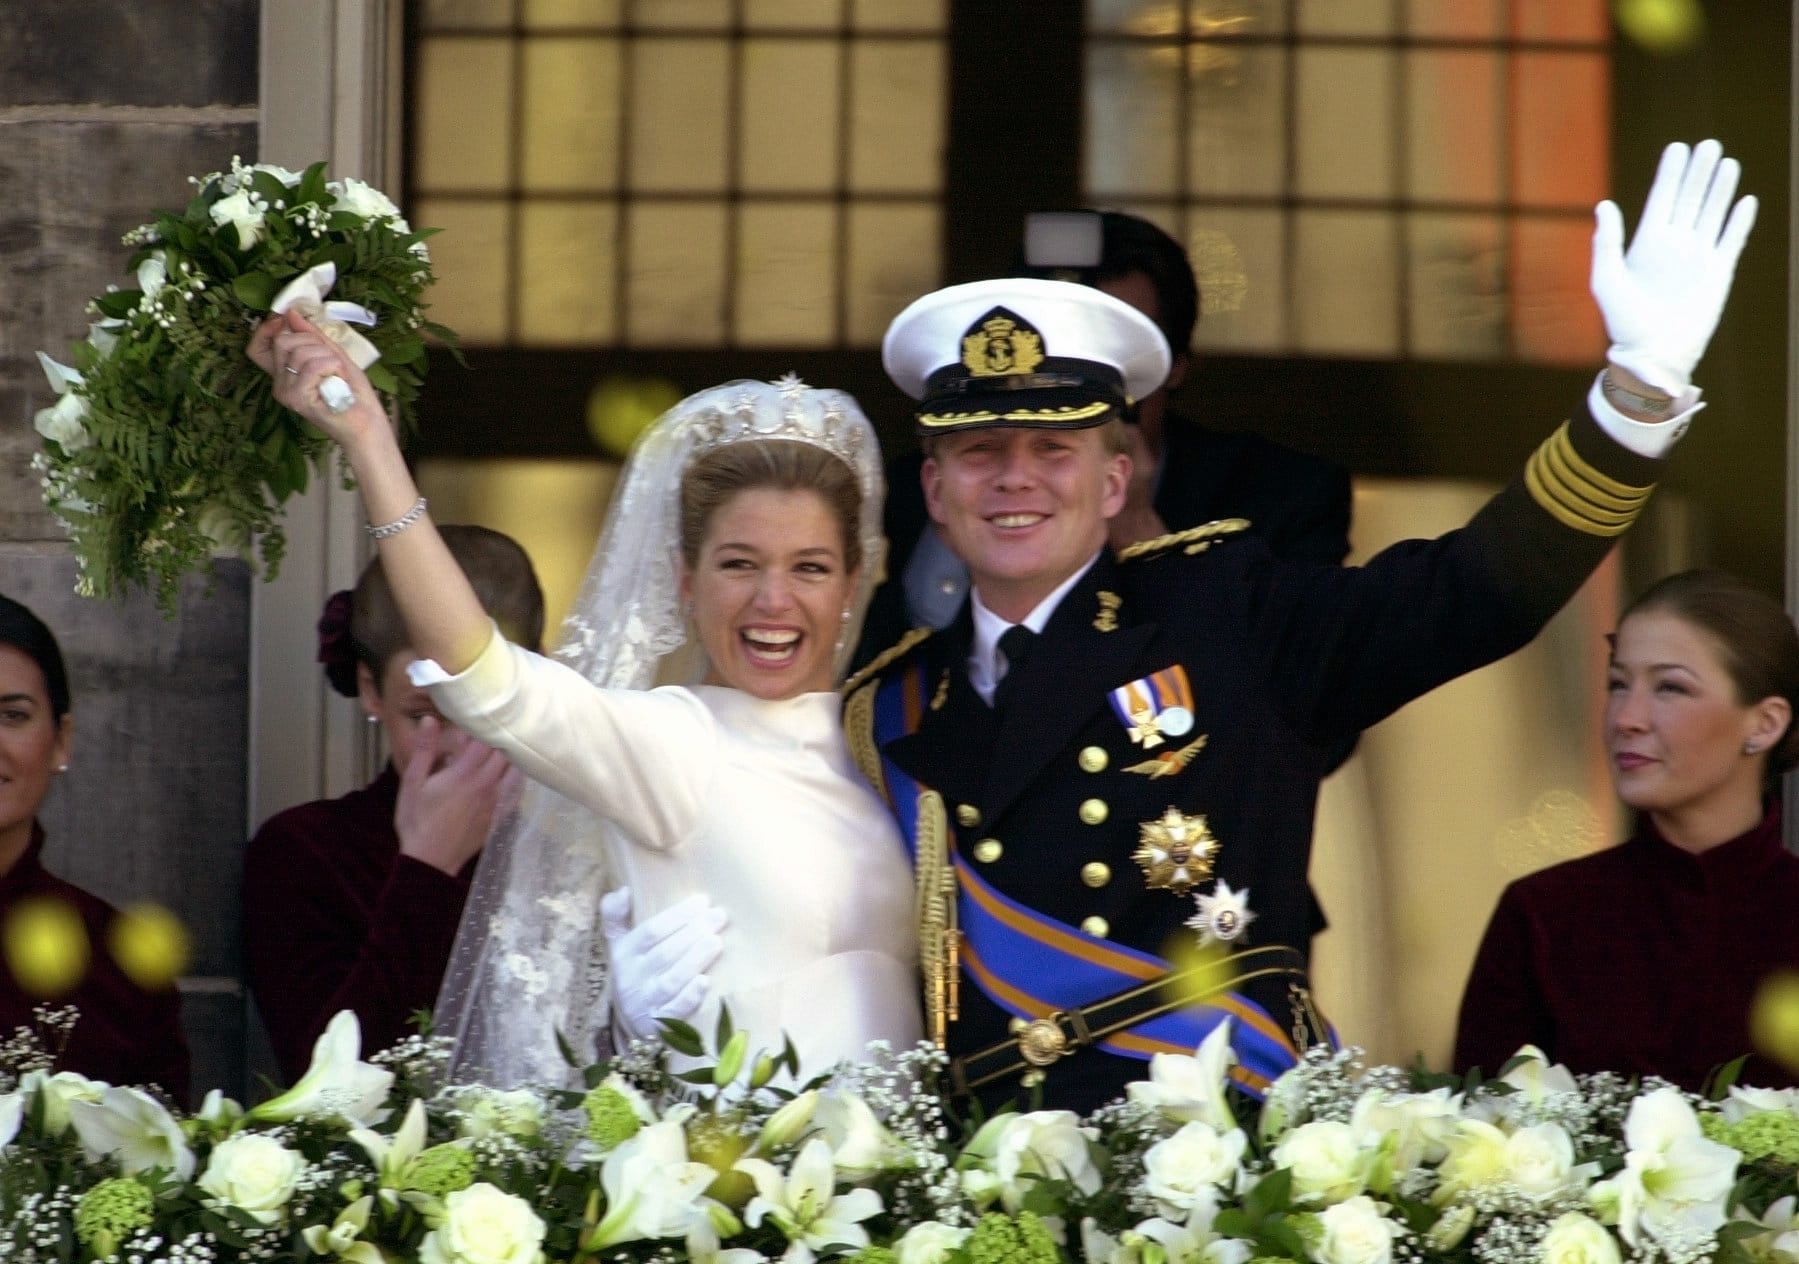 In den Niederlanden läuteten 2004 die Hochzeitsglocken: Kronprinz Willem-Alexander heiratete seine Máxima. Die bildhübsche Argentinierin verdrehte nicht nur dem Thronfolger, sondern dem gesamten niederländischen Volk den Kopf - dank ihrem strahlenden Lächeln und ihrer charmanten Art.